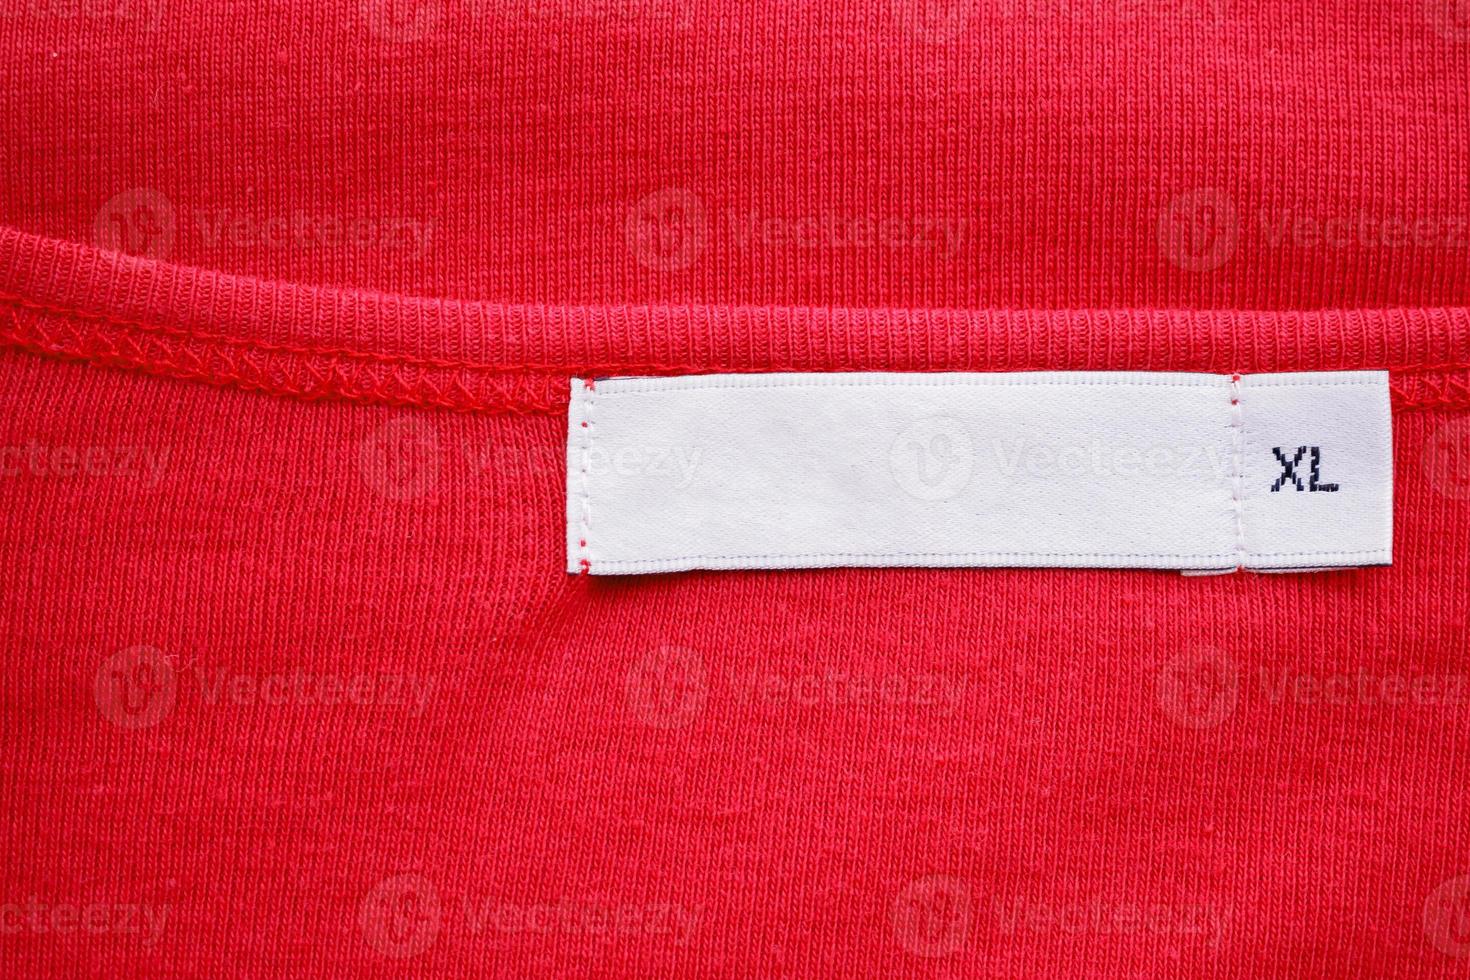 etiqueta de etiqueta de ropa blanca en blanco con tamaño xl en camisa roja nueva foto